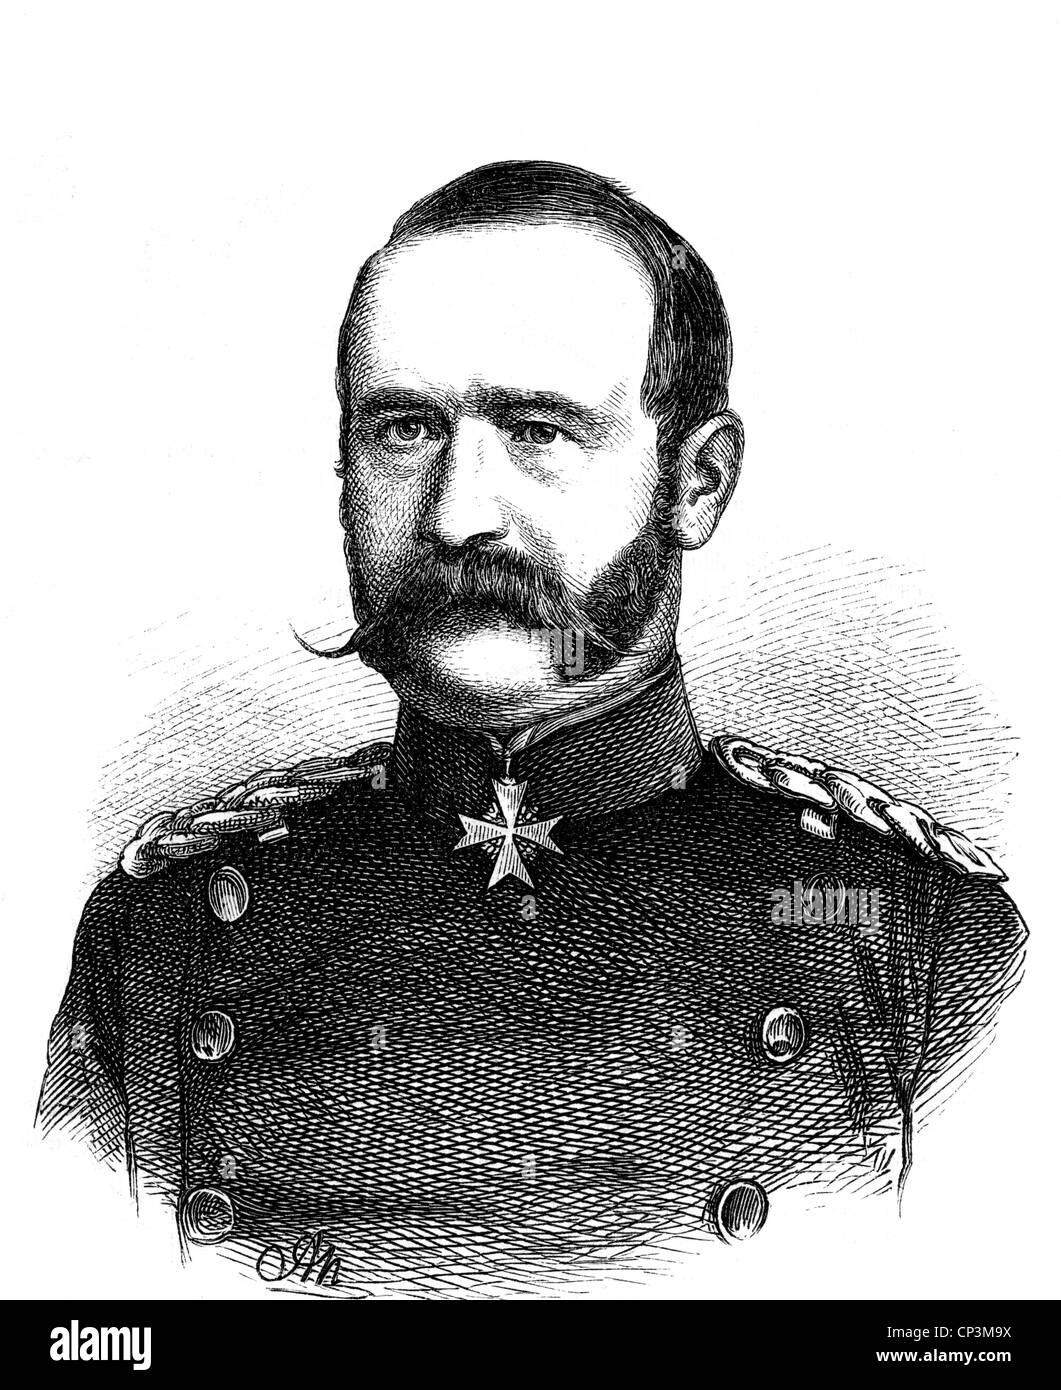 Kummer, Rudolf Ferdinand von, 11.4.1816 - 1900, Prussian general, portrait, wood engraving, circa 1870, Stock Photo